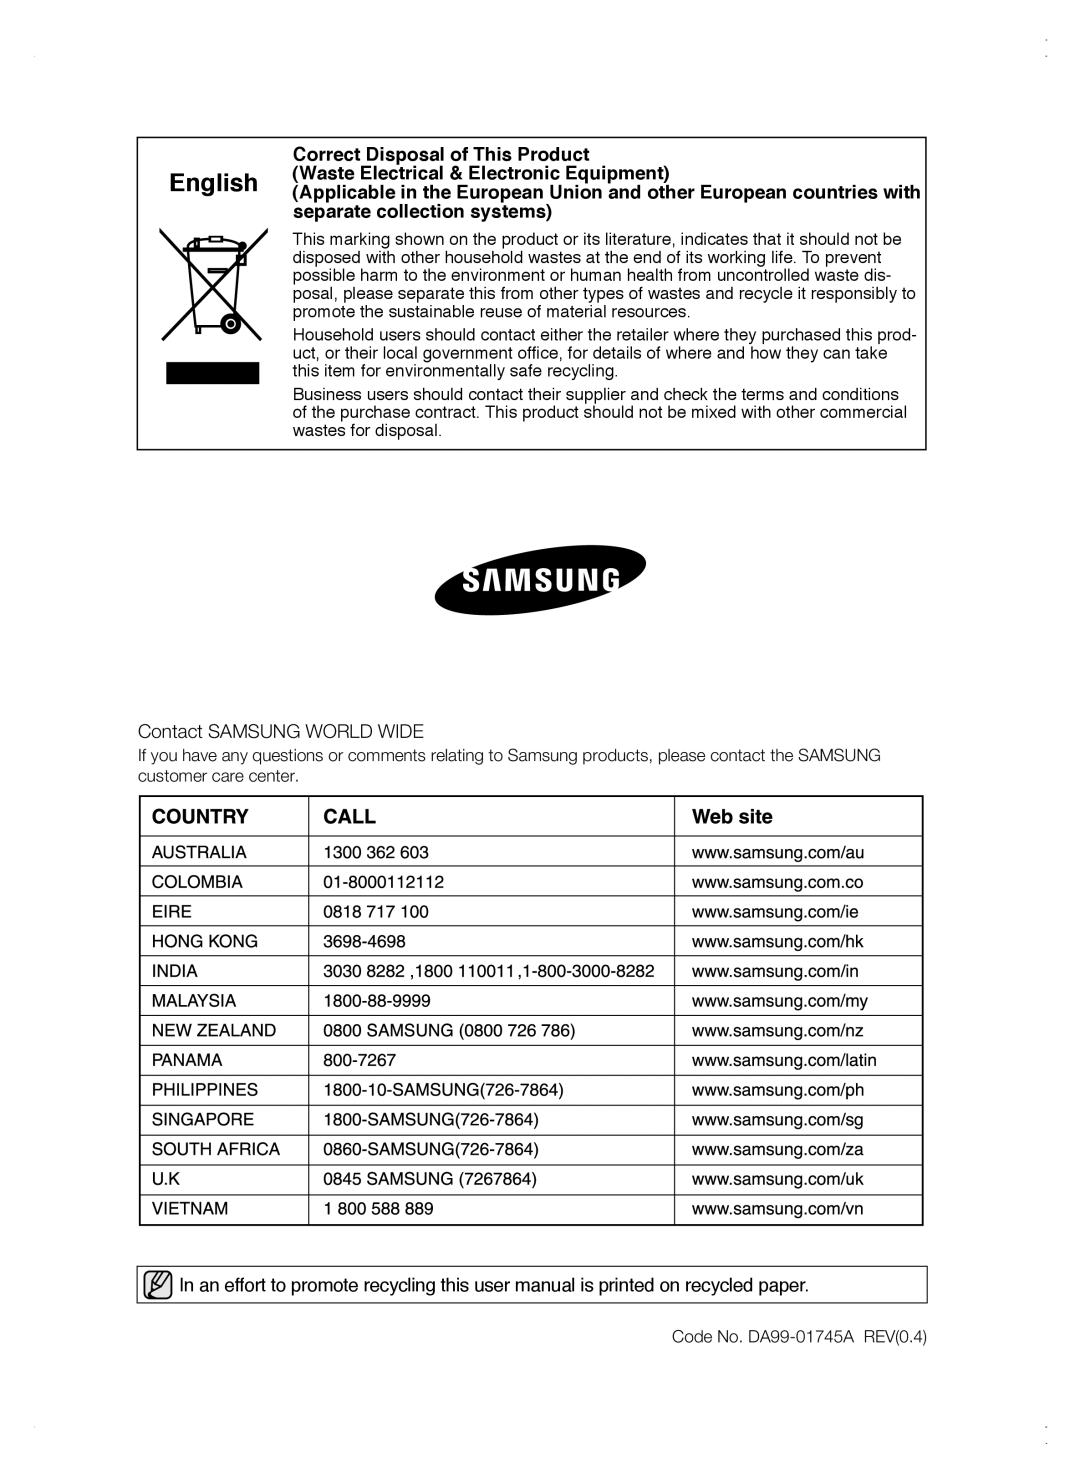 Samsung RSG5 user manual Contact SAMSUNG WORLD WIDE, Code No. DA99-01745A REV0.4 